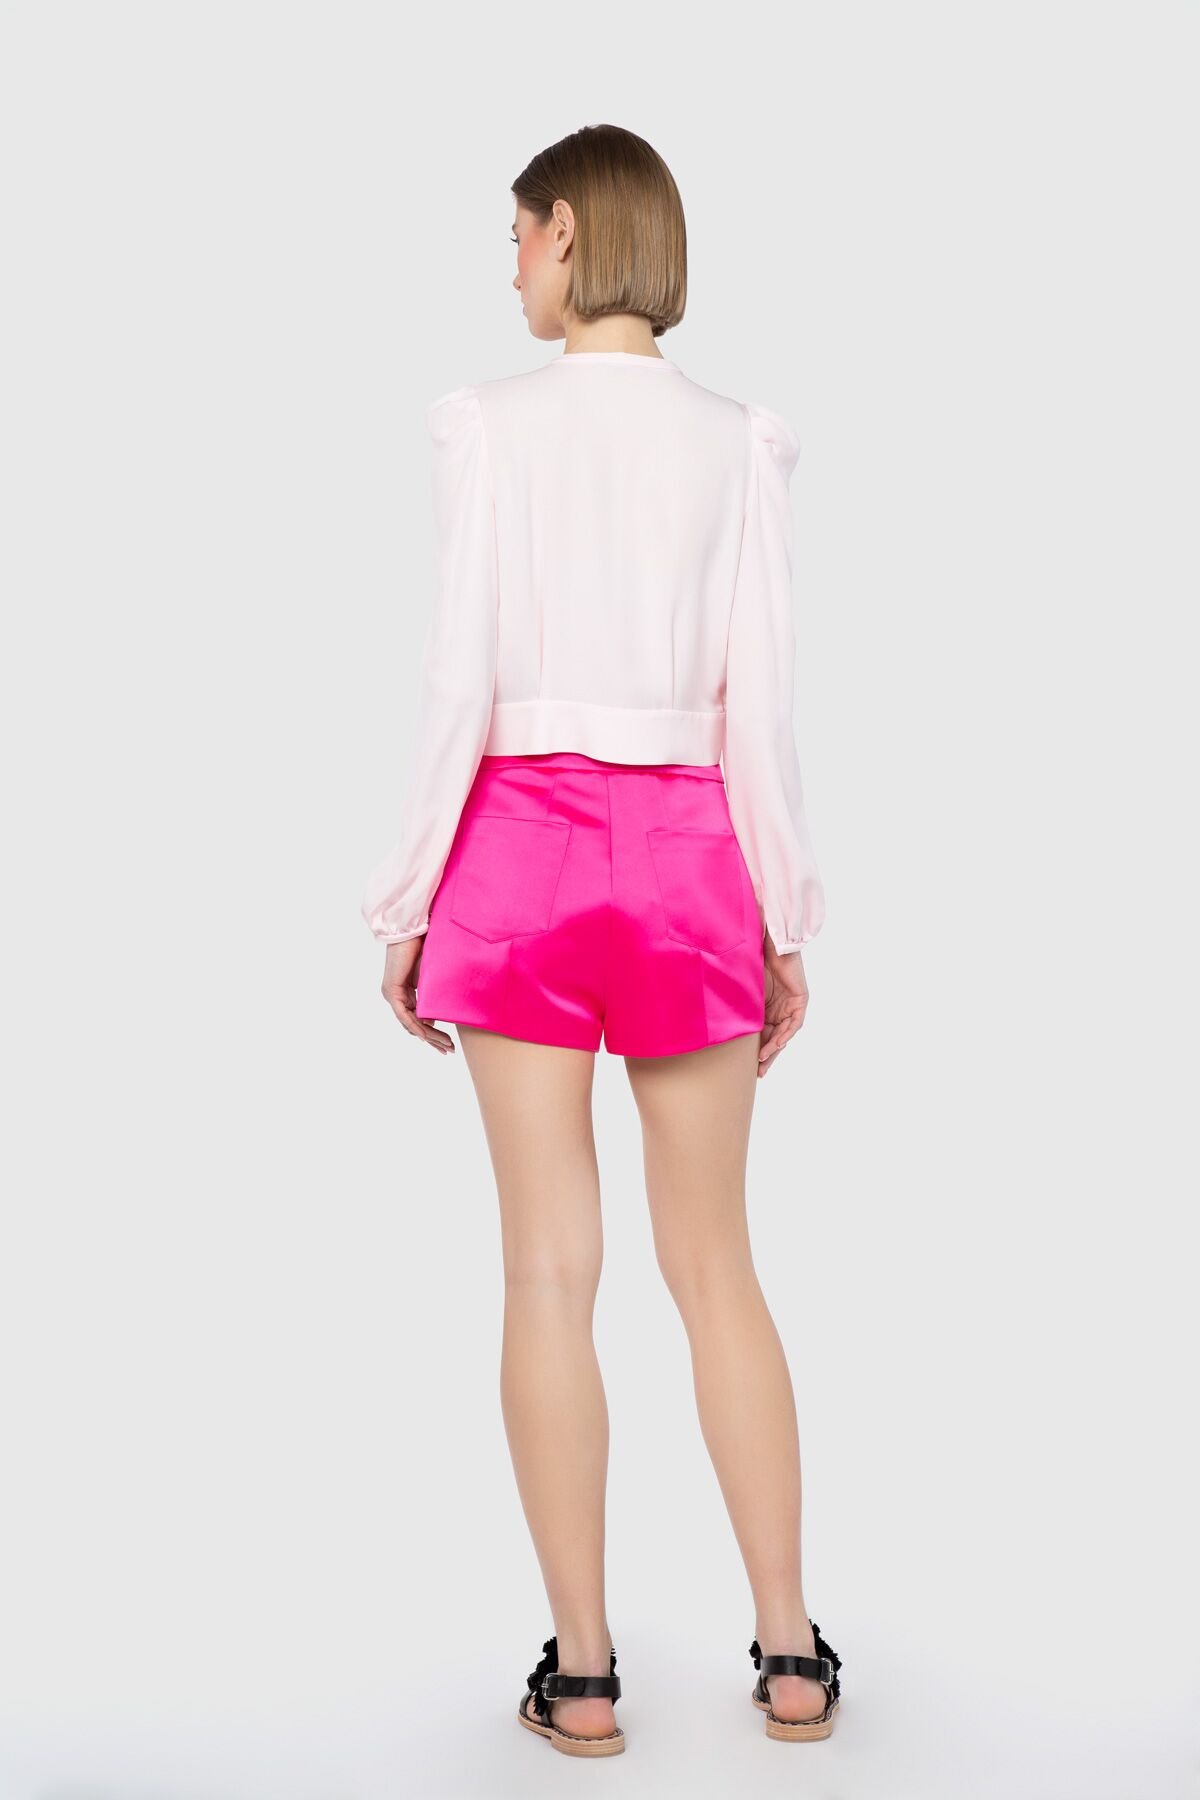 Shiny Finish Short Pink Shorts